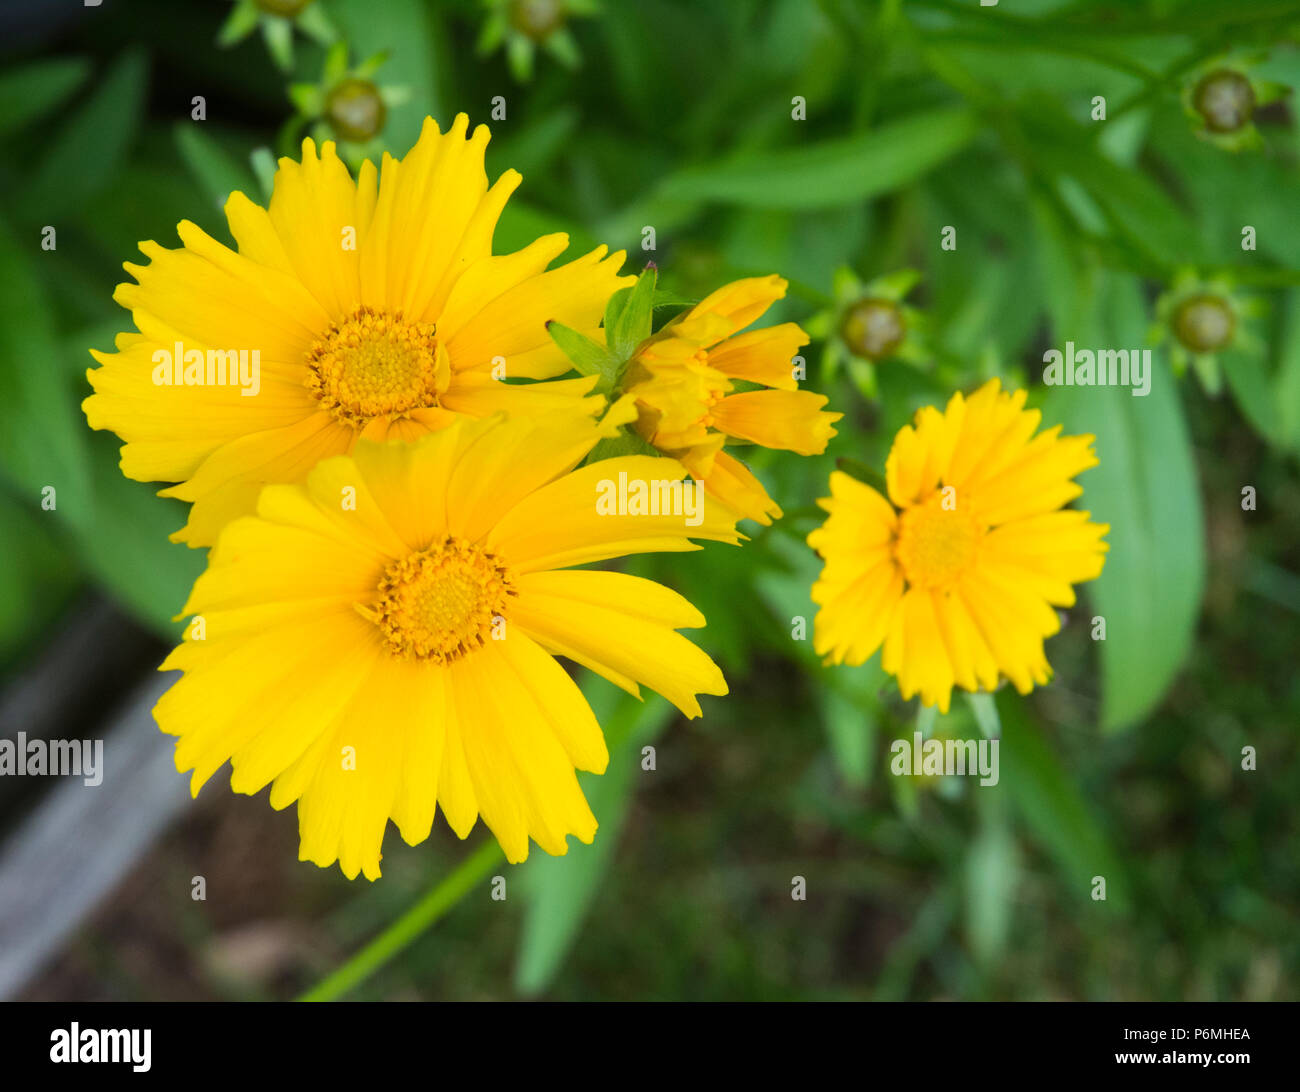 Varietà unica di Daisy ha un bel contrasto contro i verdi nel giardino. Foto Stock